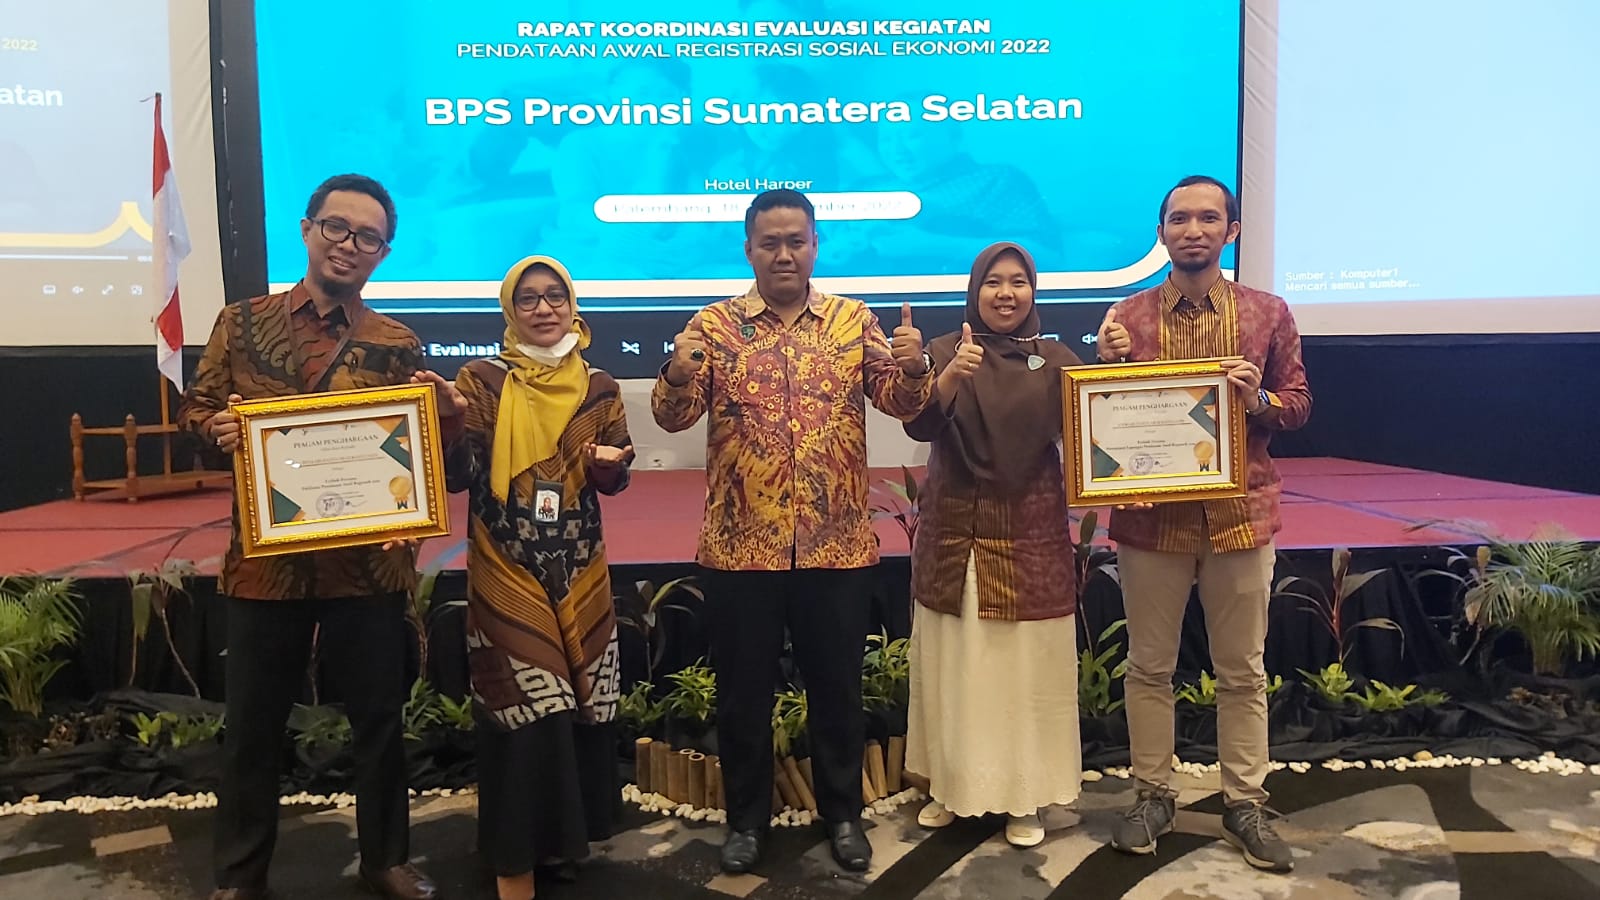 BPS Muba Raih 2 Penghargaan Pada Kegiatan Pendataan Awal Regsosek, Manajemen Lapangan dan Publisitas Terbaik